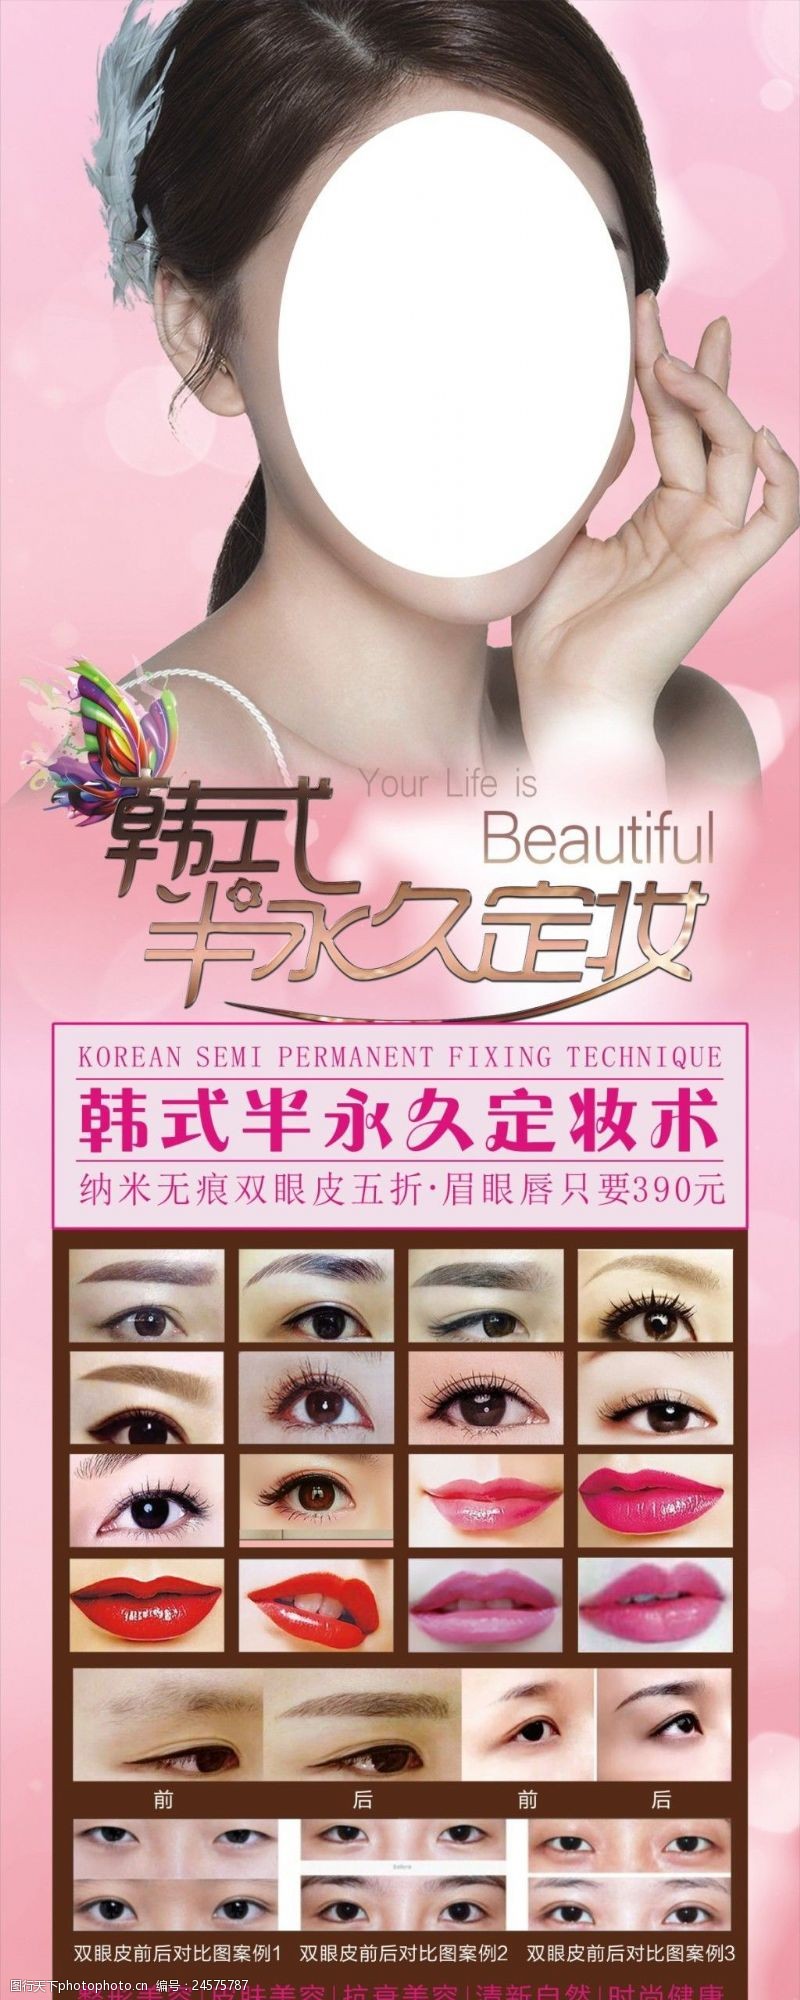 粉色背景易拉宝韩式半永久定妆术展板